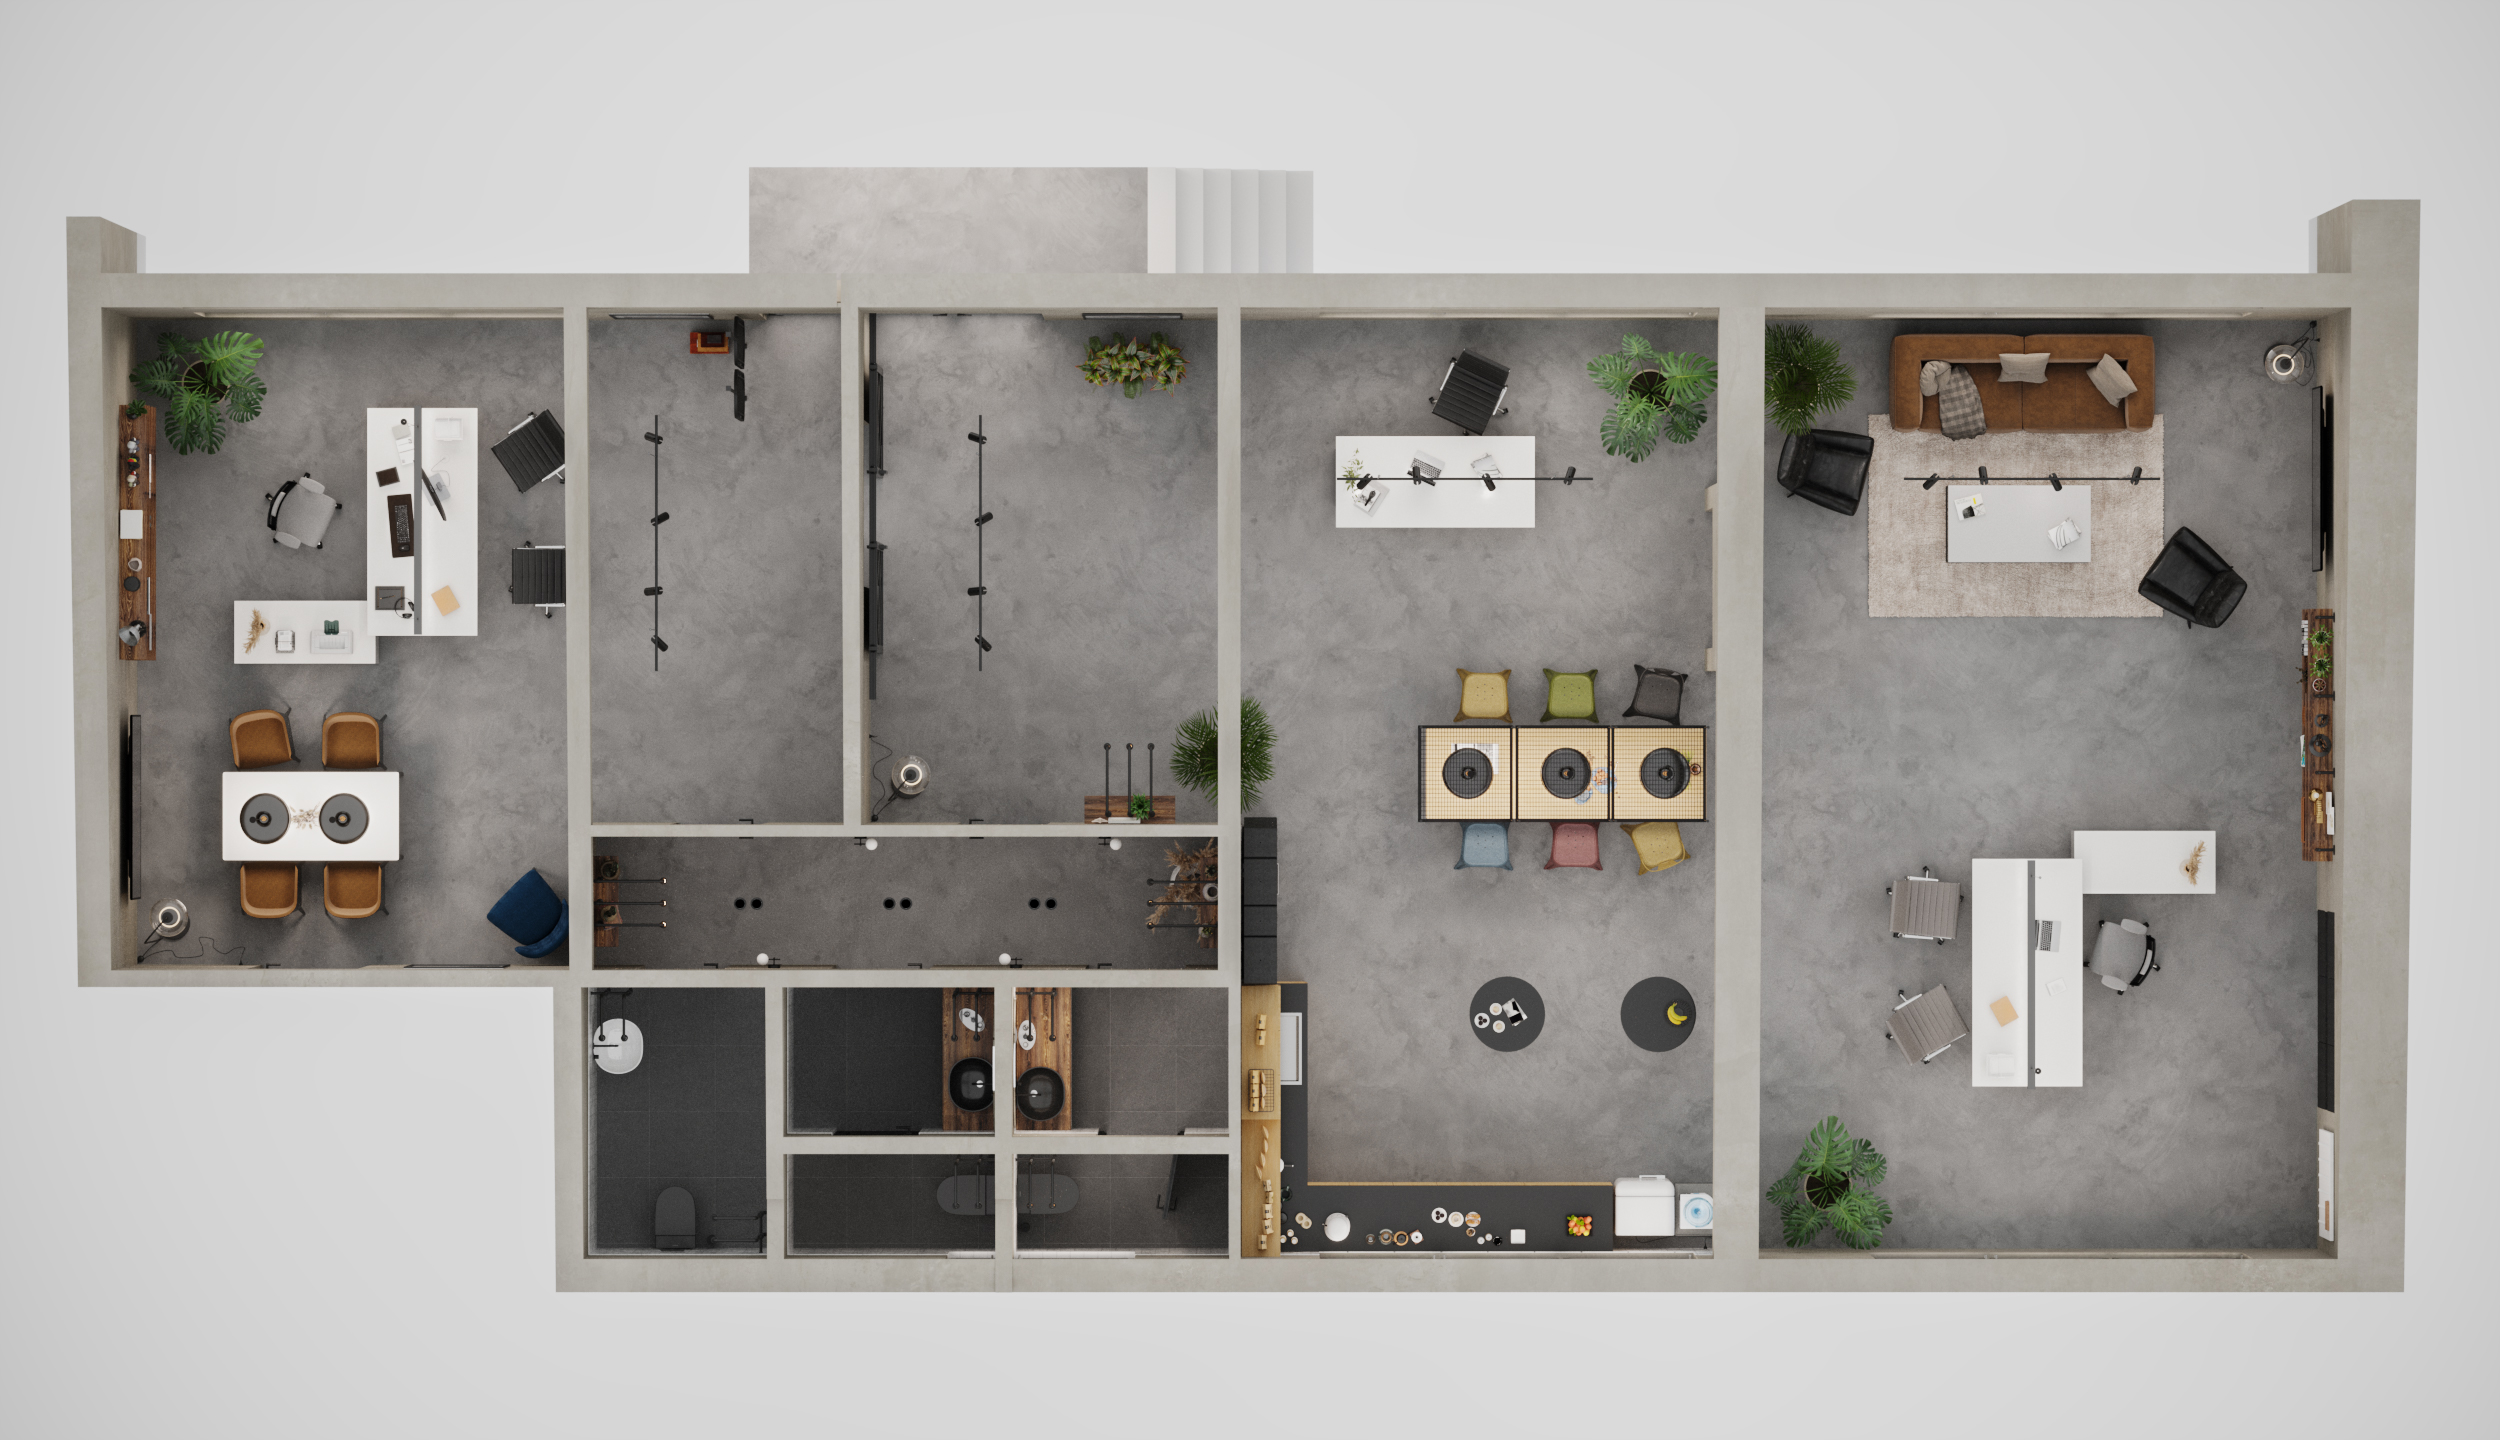 Grundriss der Visualisierung der Innenarchitektur und Ladenbau für das Büro in Fahrweid bei Dietikon im Limmattal.